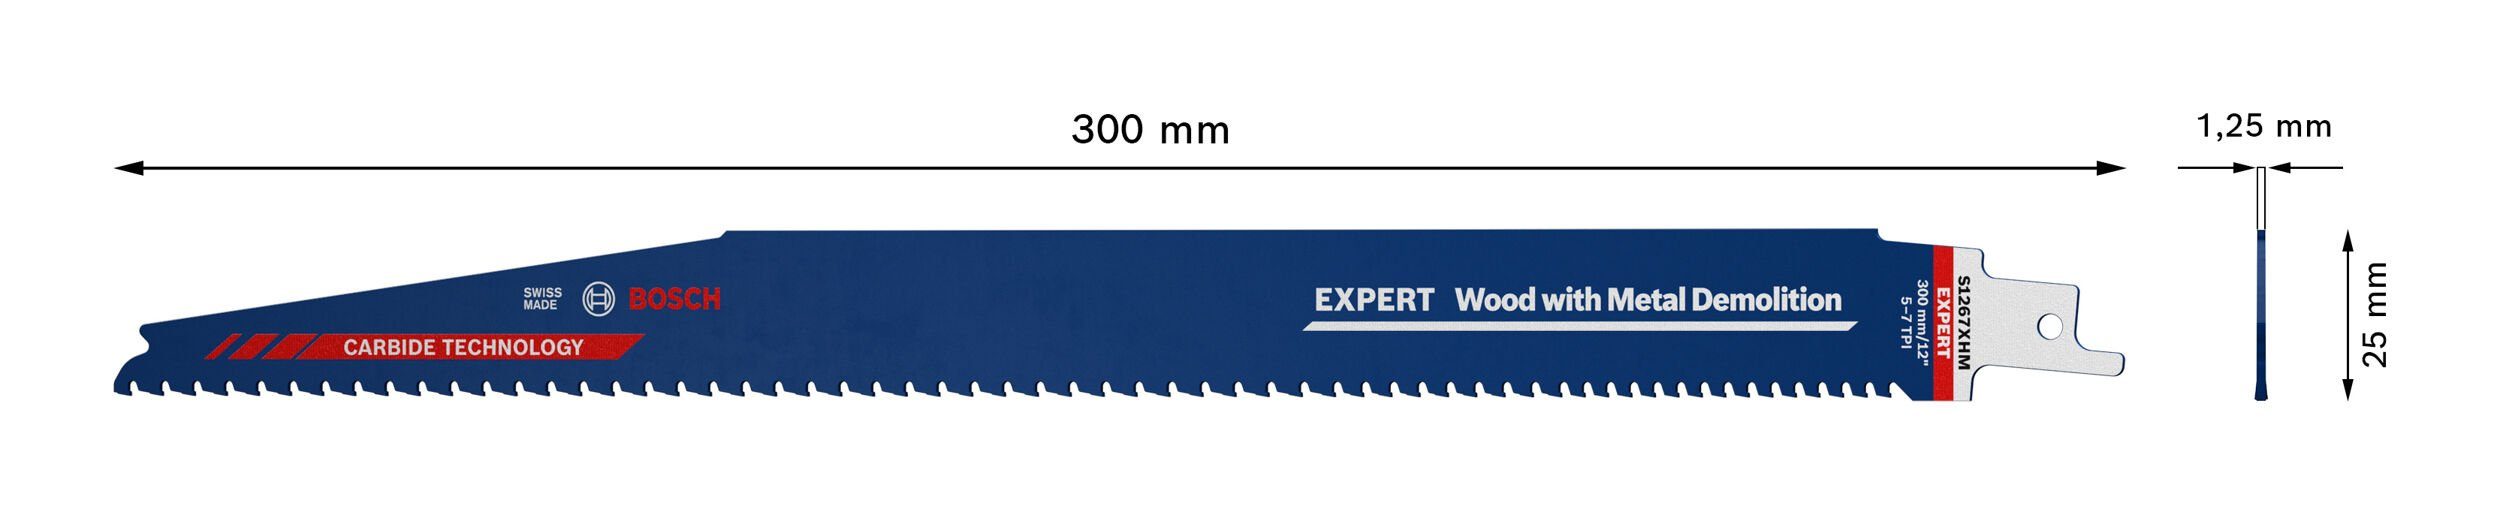 Säbelsägeblatt S Demolition Endurance Expert XHM for Wood Metal BOSCH and Demolition, 1267 Wood Expert with Metal